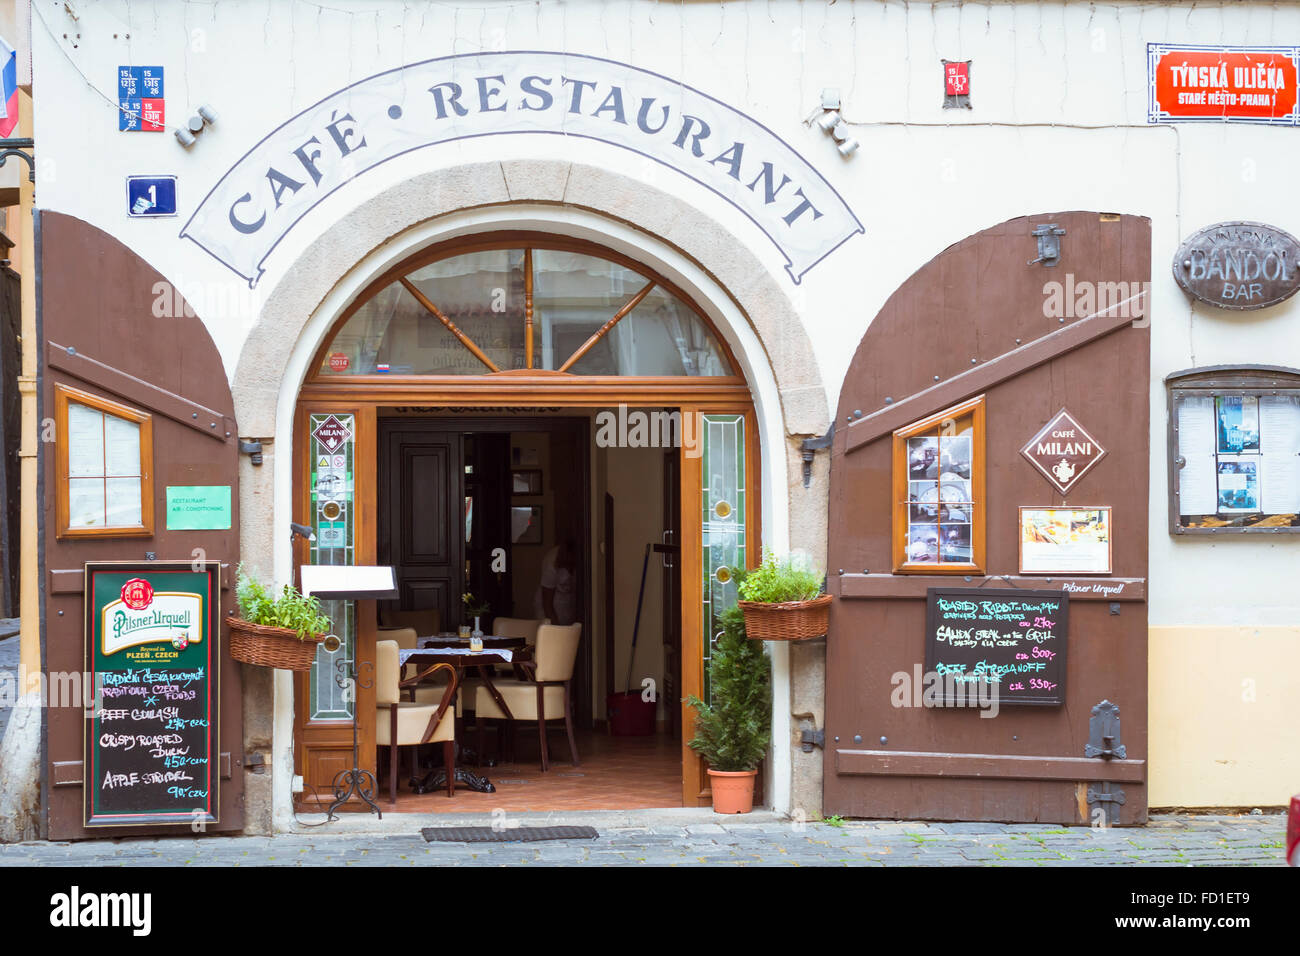 PRAGUE, CZECH REPUBLIC - AUGUST 28, 2015: Cafe-Restaurant on the street market in old Town Prague, Czech Republic Stock Photo